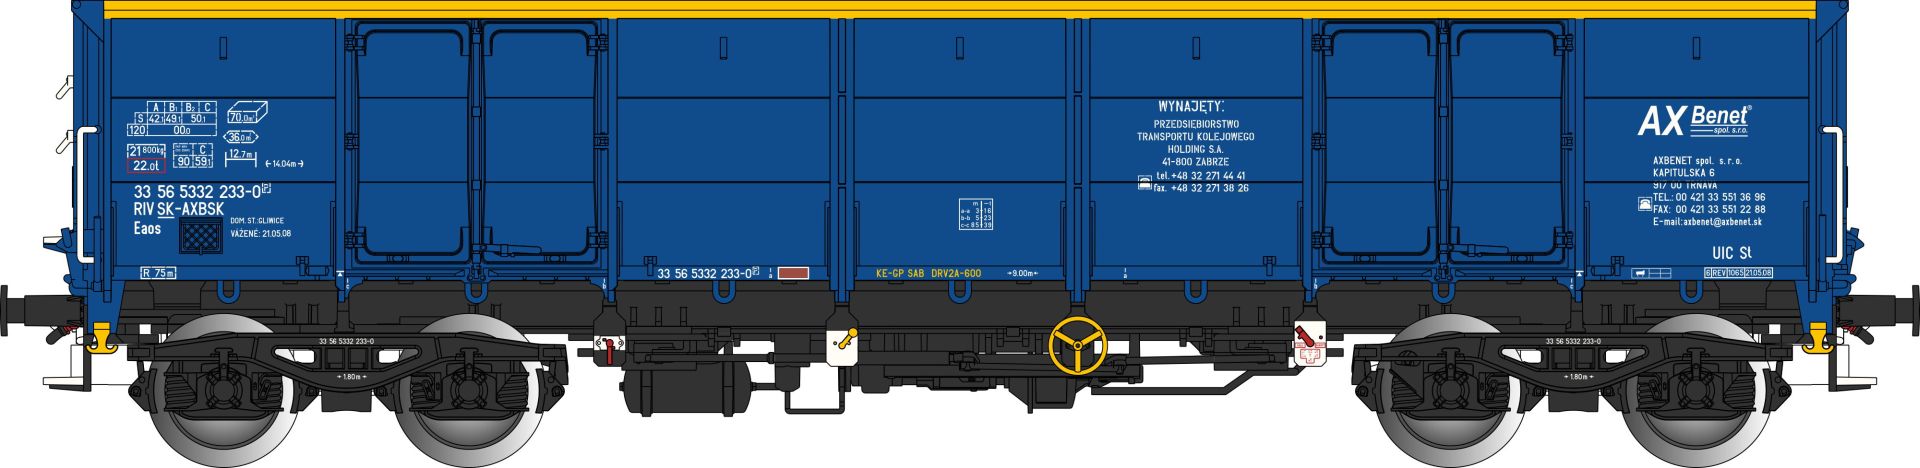 Albert Modell 533003 - Offener Güterwagen Eaos, SK-AXBSK, Ep.VI